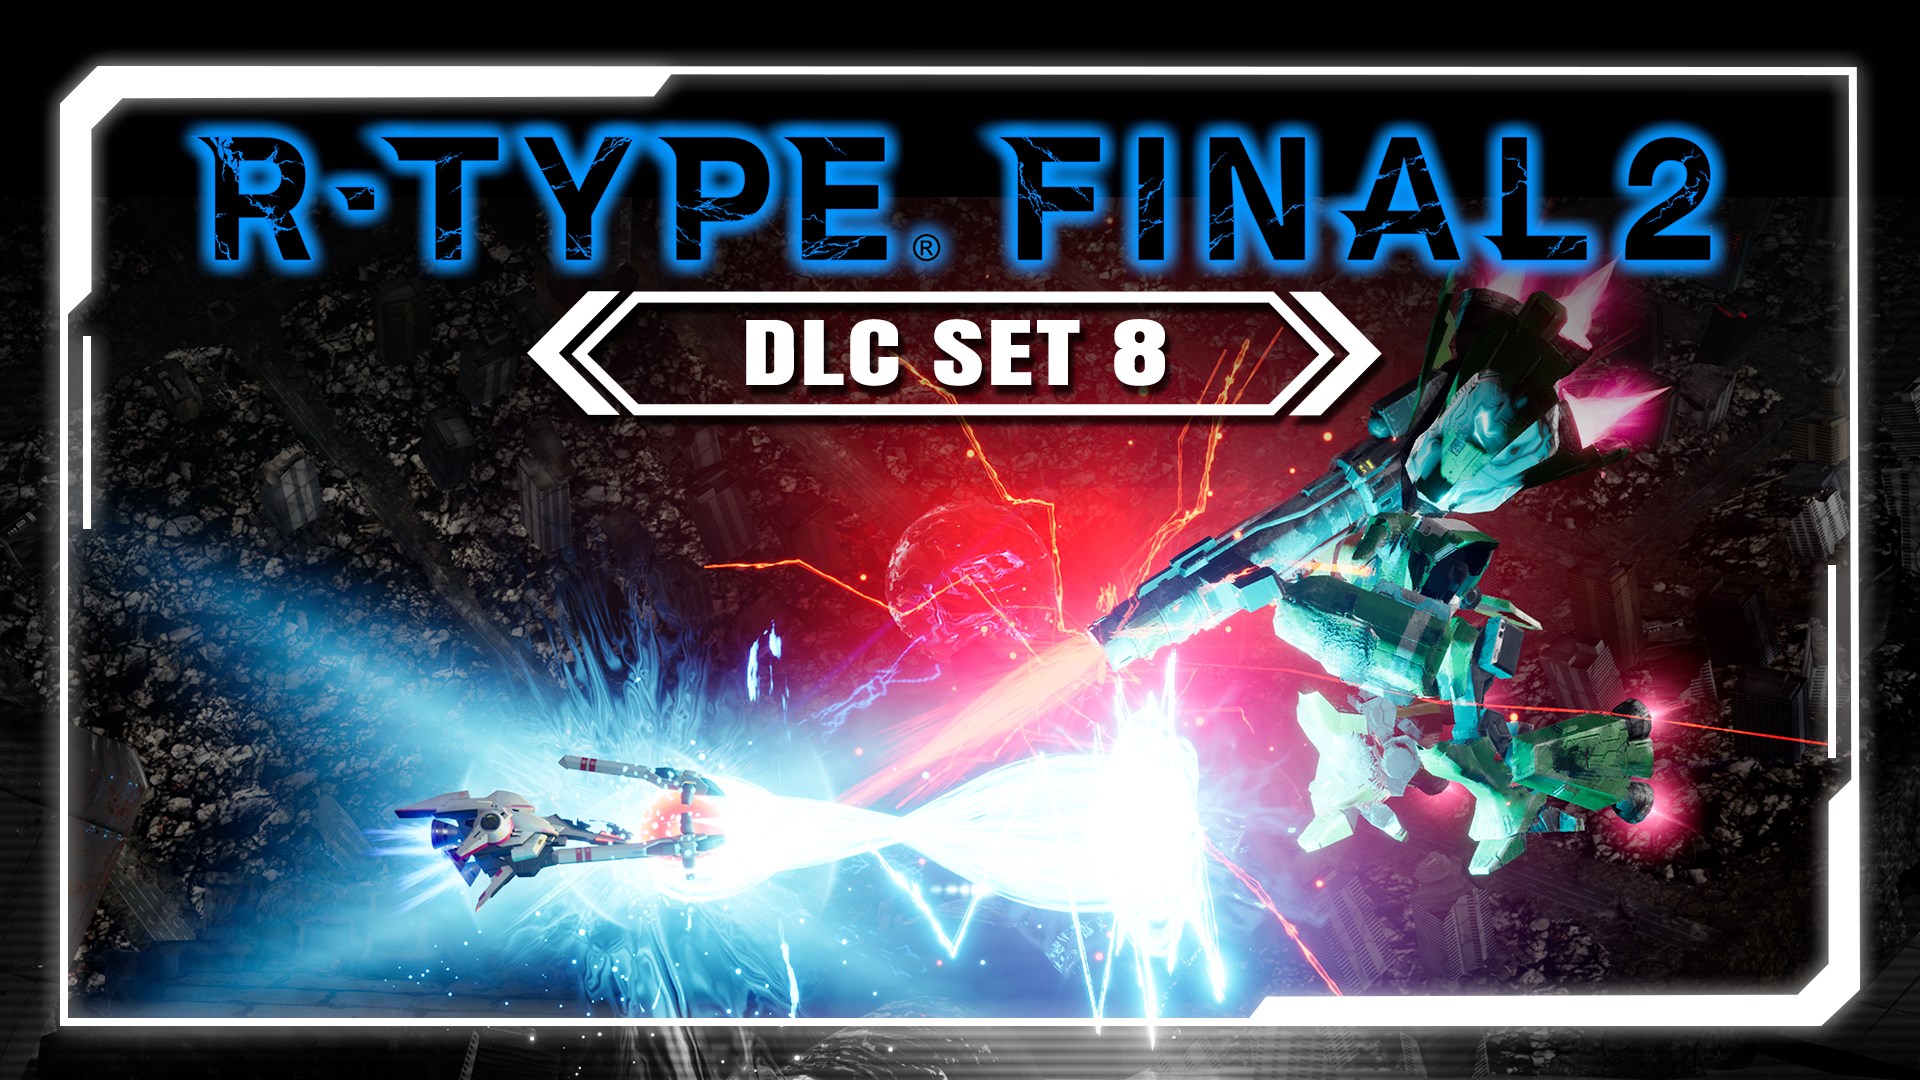 R-Type Final 2 PC: DLC Set 8